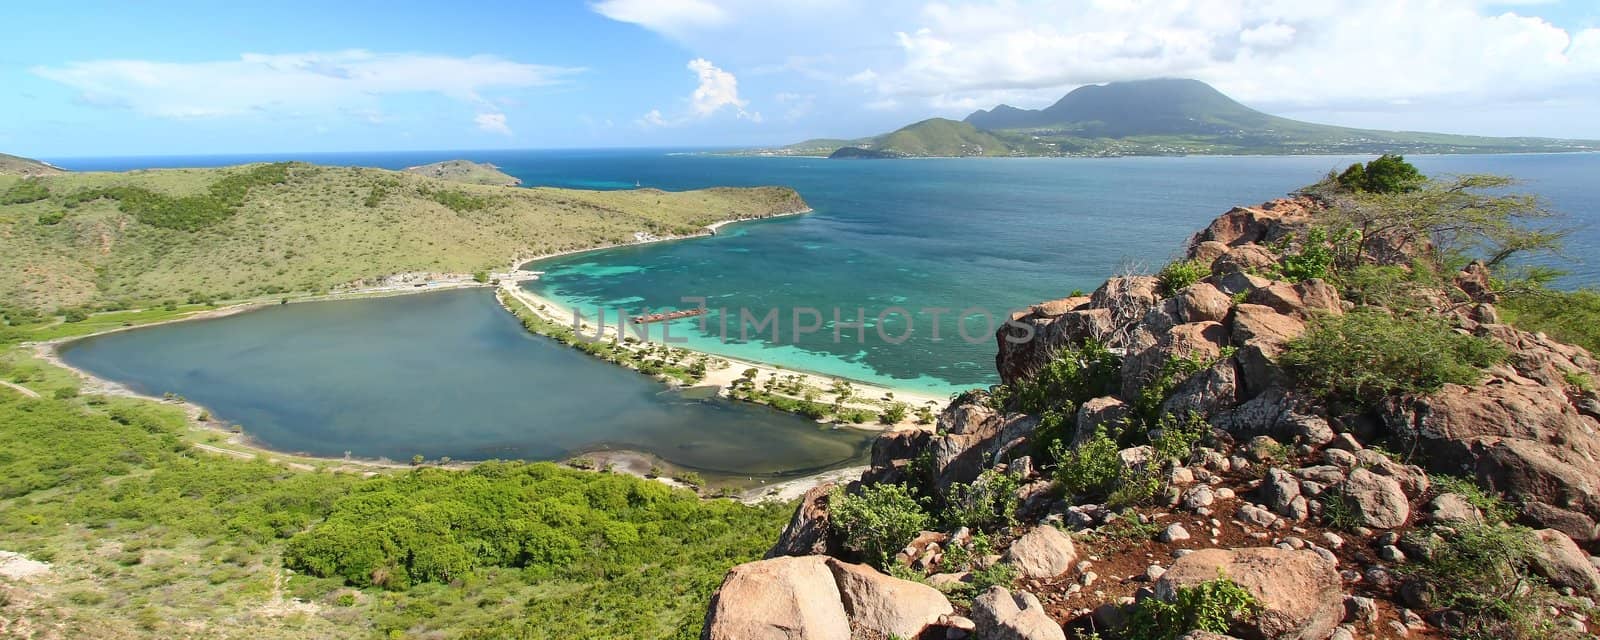 Majors Bay Beach - Saint Kitts by Wirepec